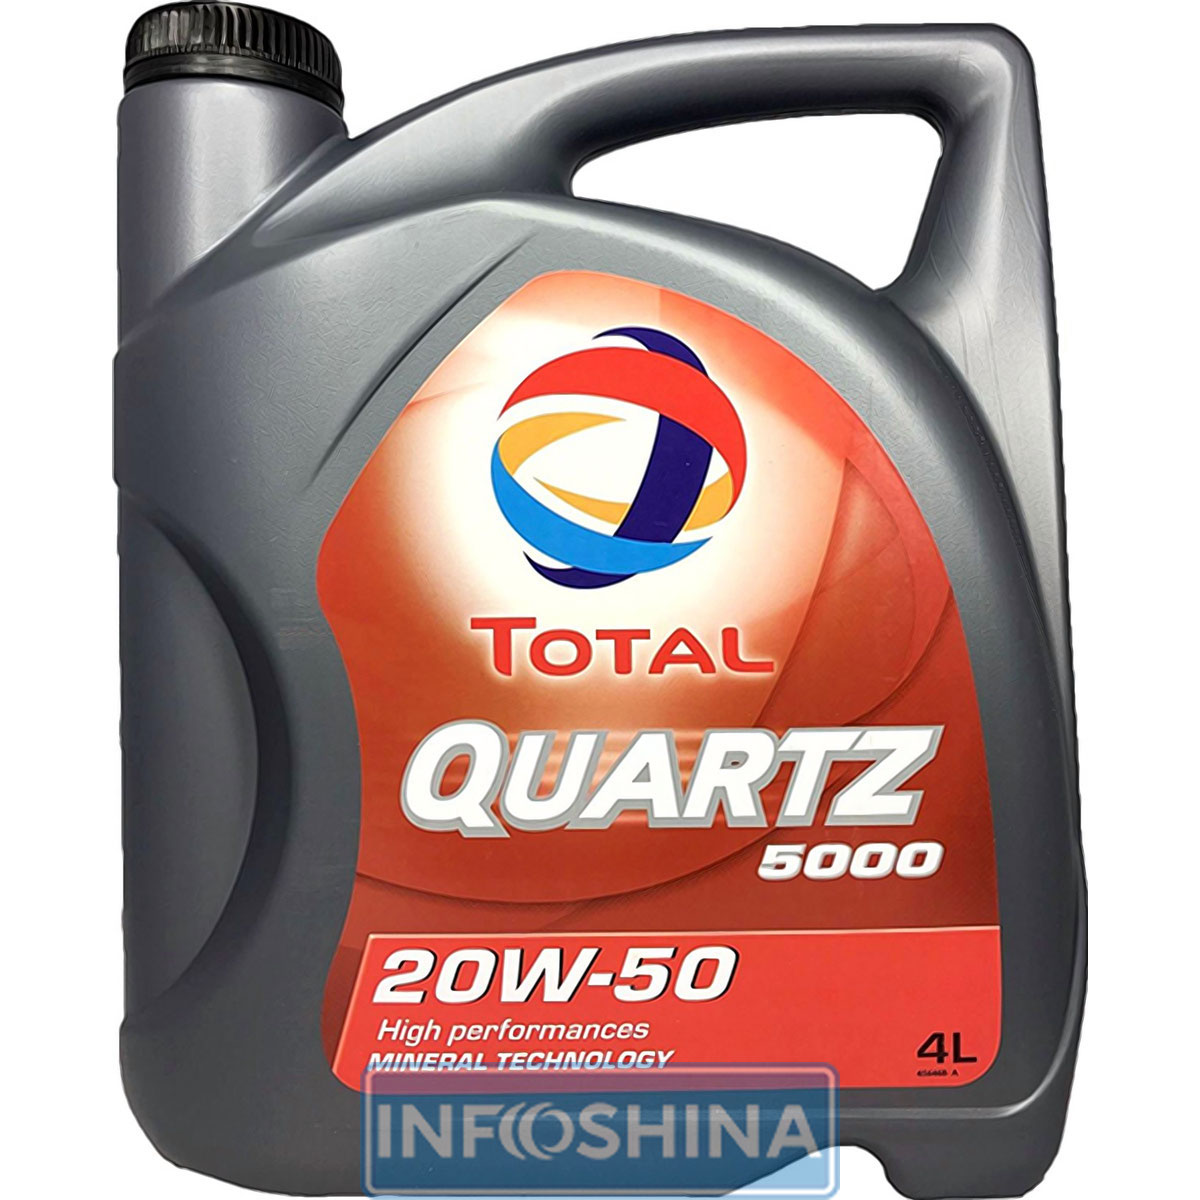 Купить масло Total Quartz 5000 20W-50 (4л)